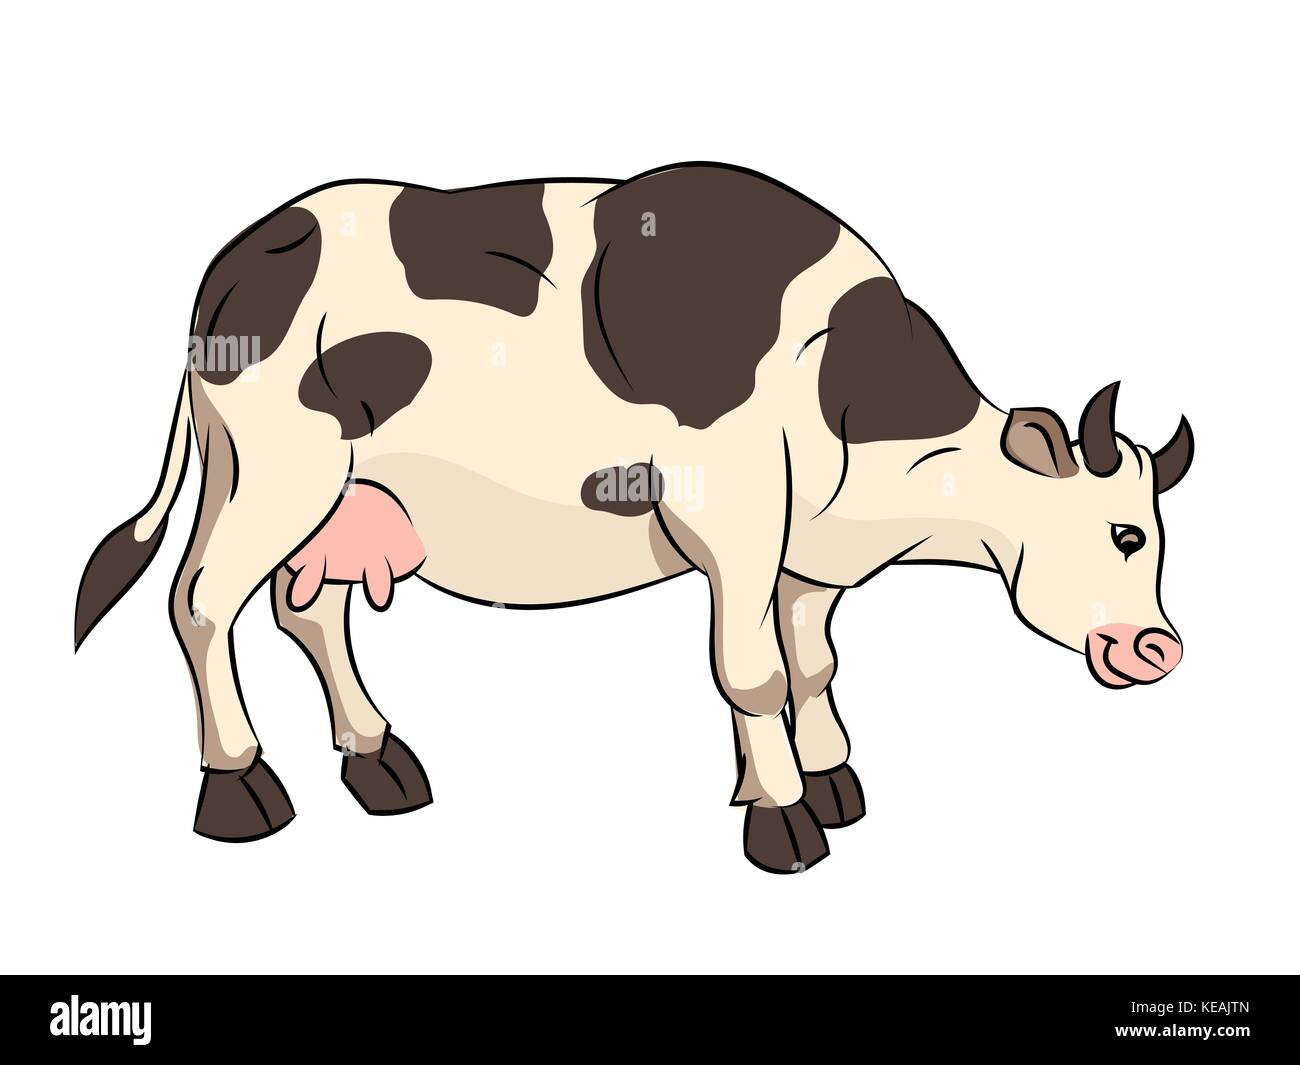 Ilustración de la vaca cartoon aislado en blanco backgroun - ilustración vectorial Ilustración del Vector